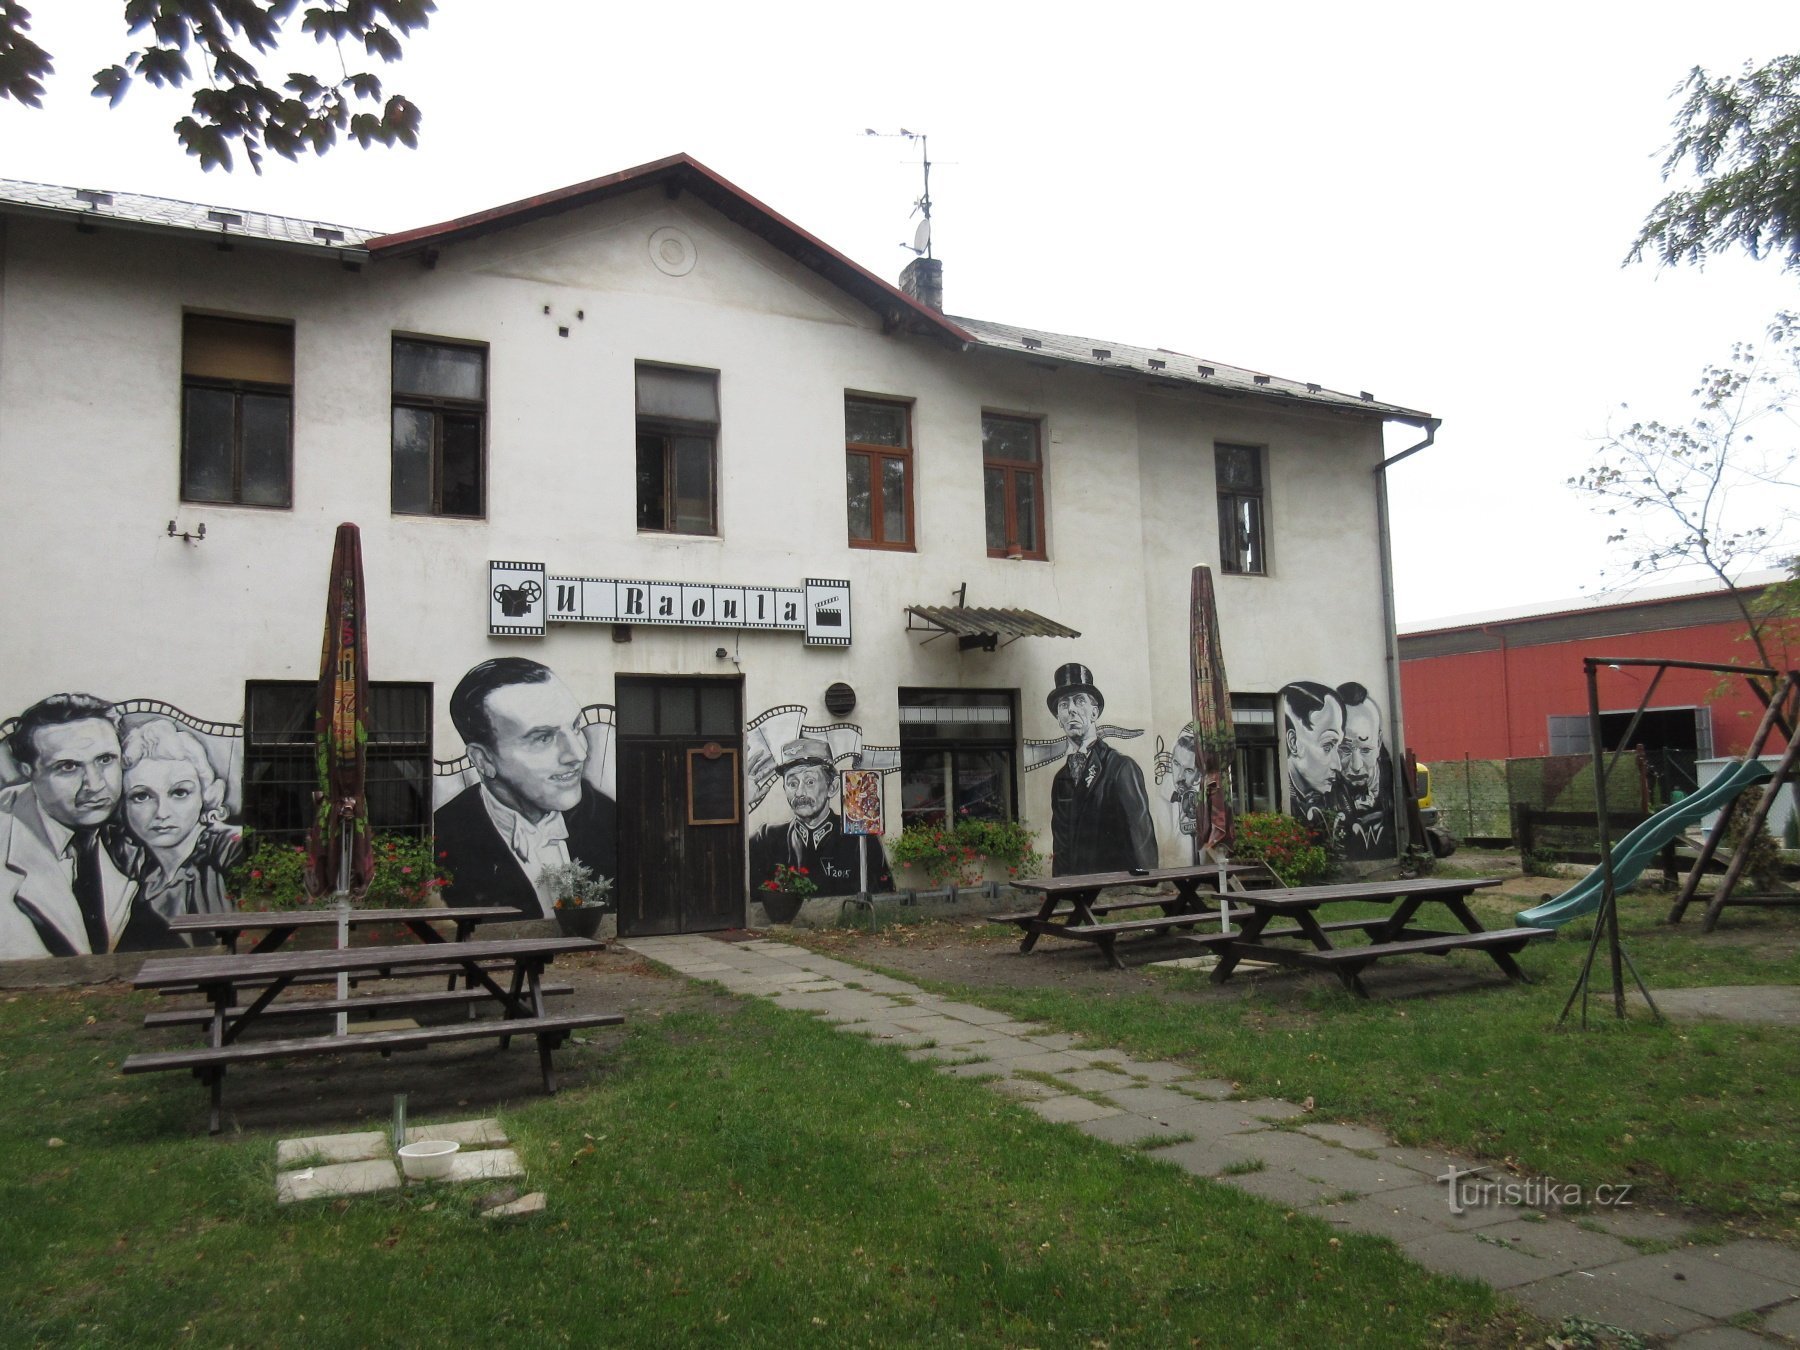 Chotětov - Maison de U Raoul (mémorial à l'acteur Raoul Száchníl)